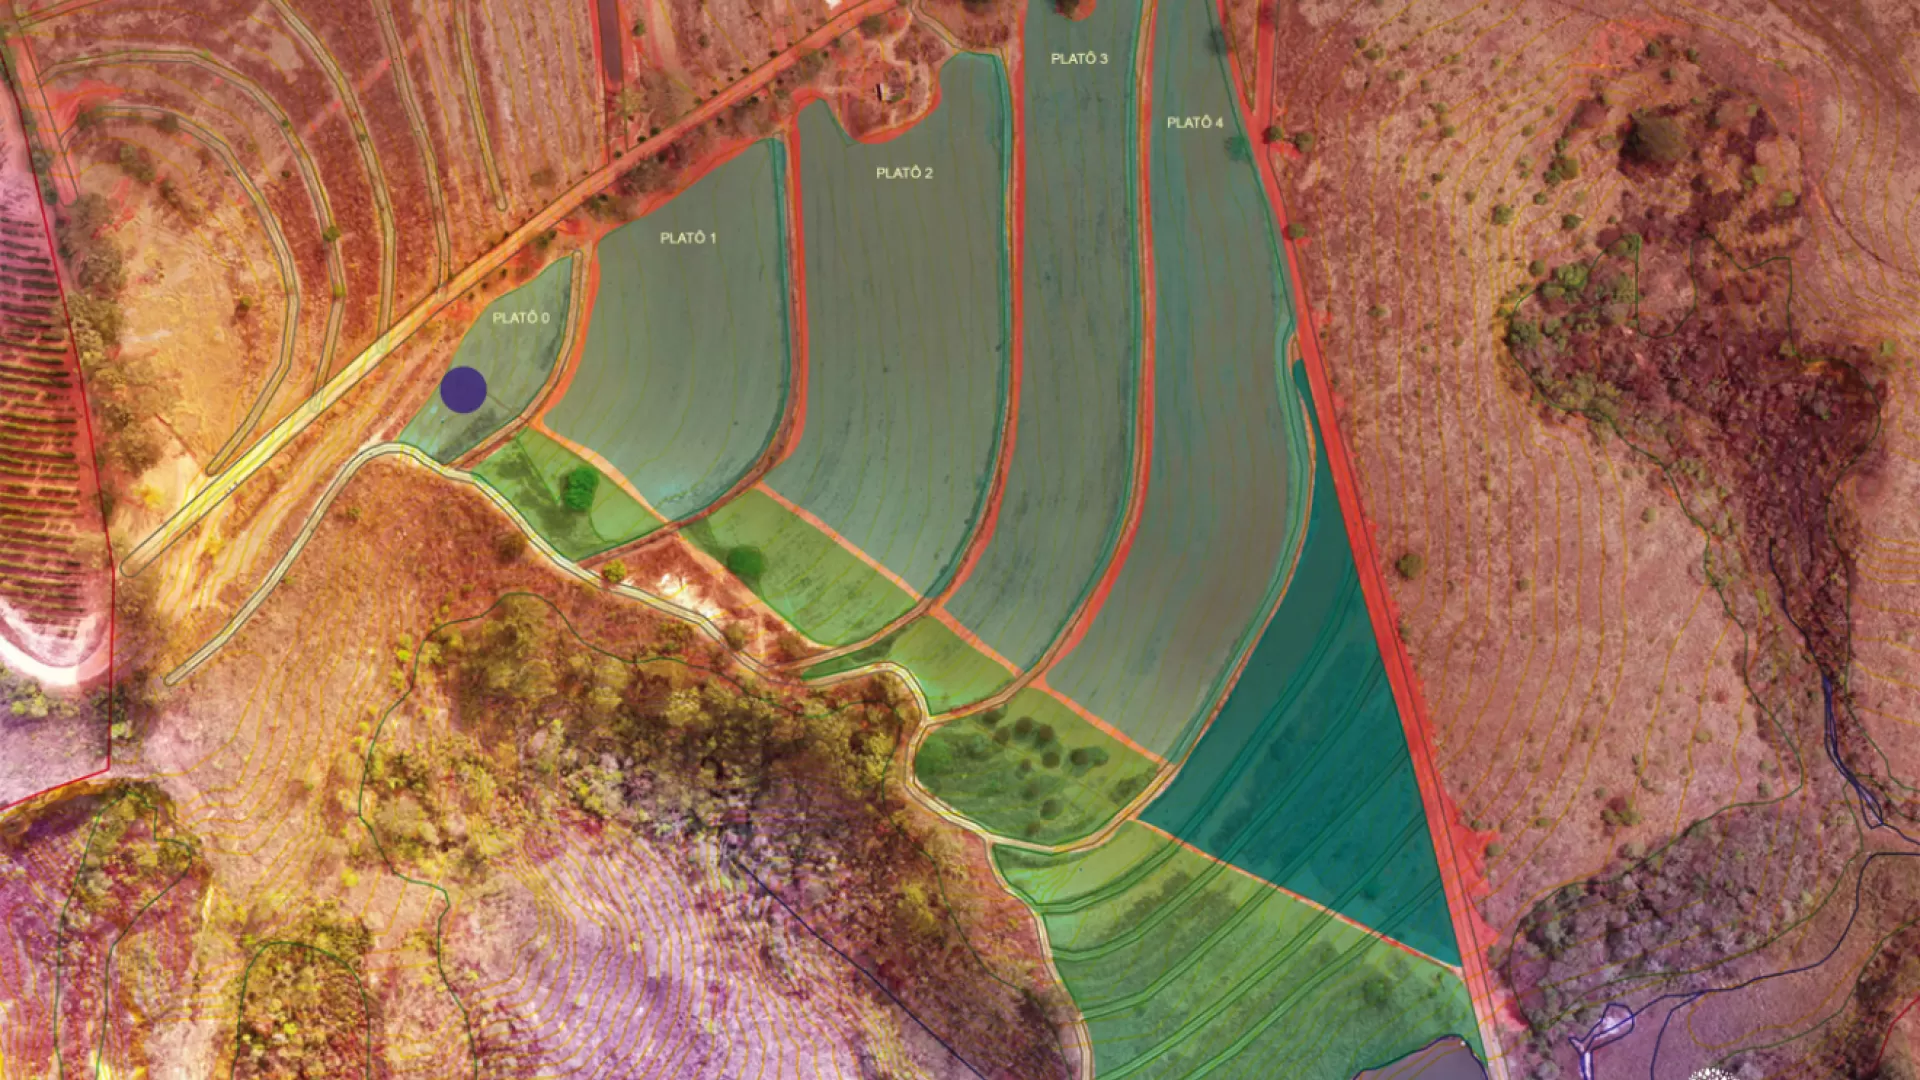 Foto B Áreas ou glebas com rotação de culturas e grãos - SAF 2 (detalhe).